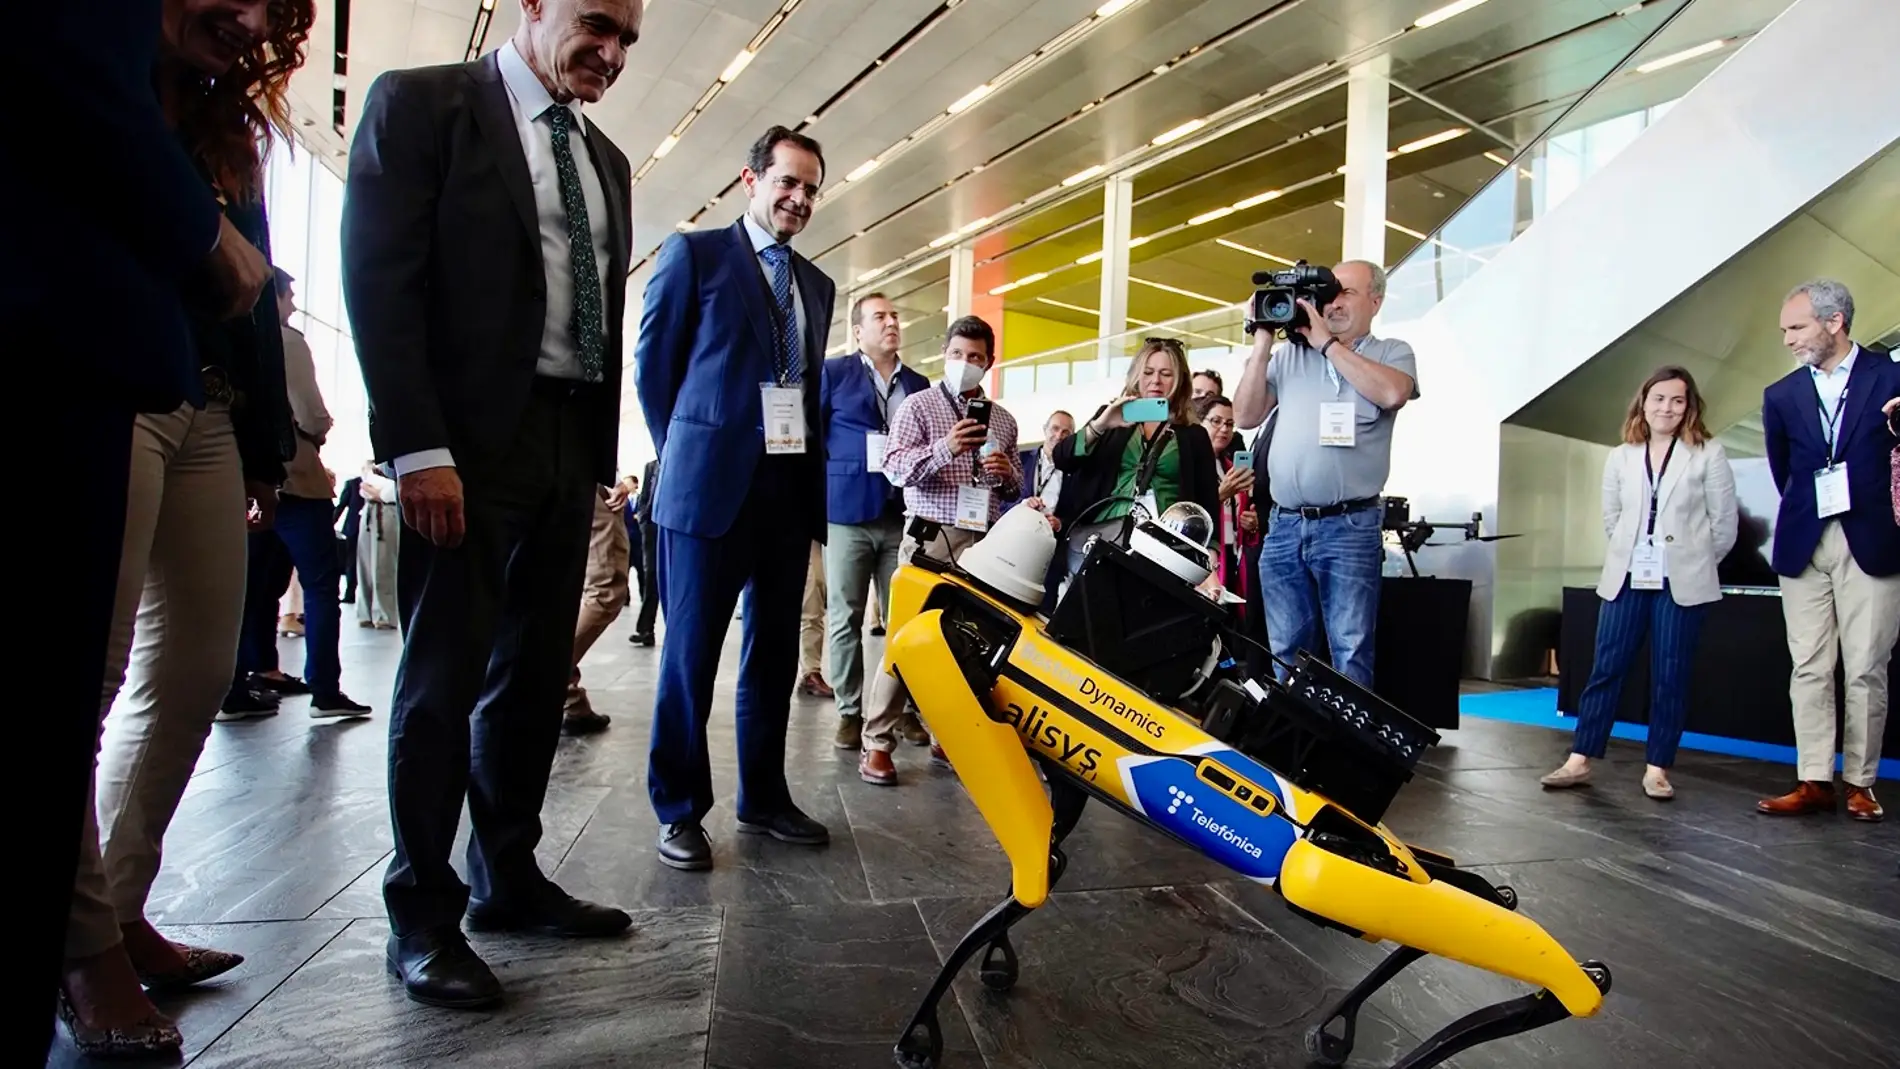 El alcalde Antonio Muñoz visitando uno de los atractivos de esta feria: el perro robot